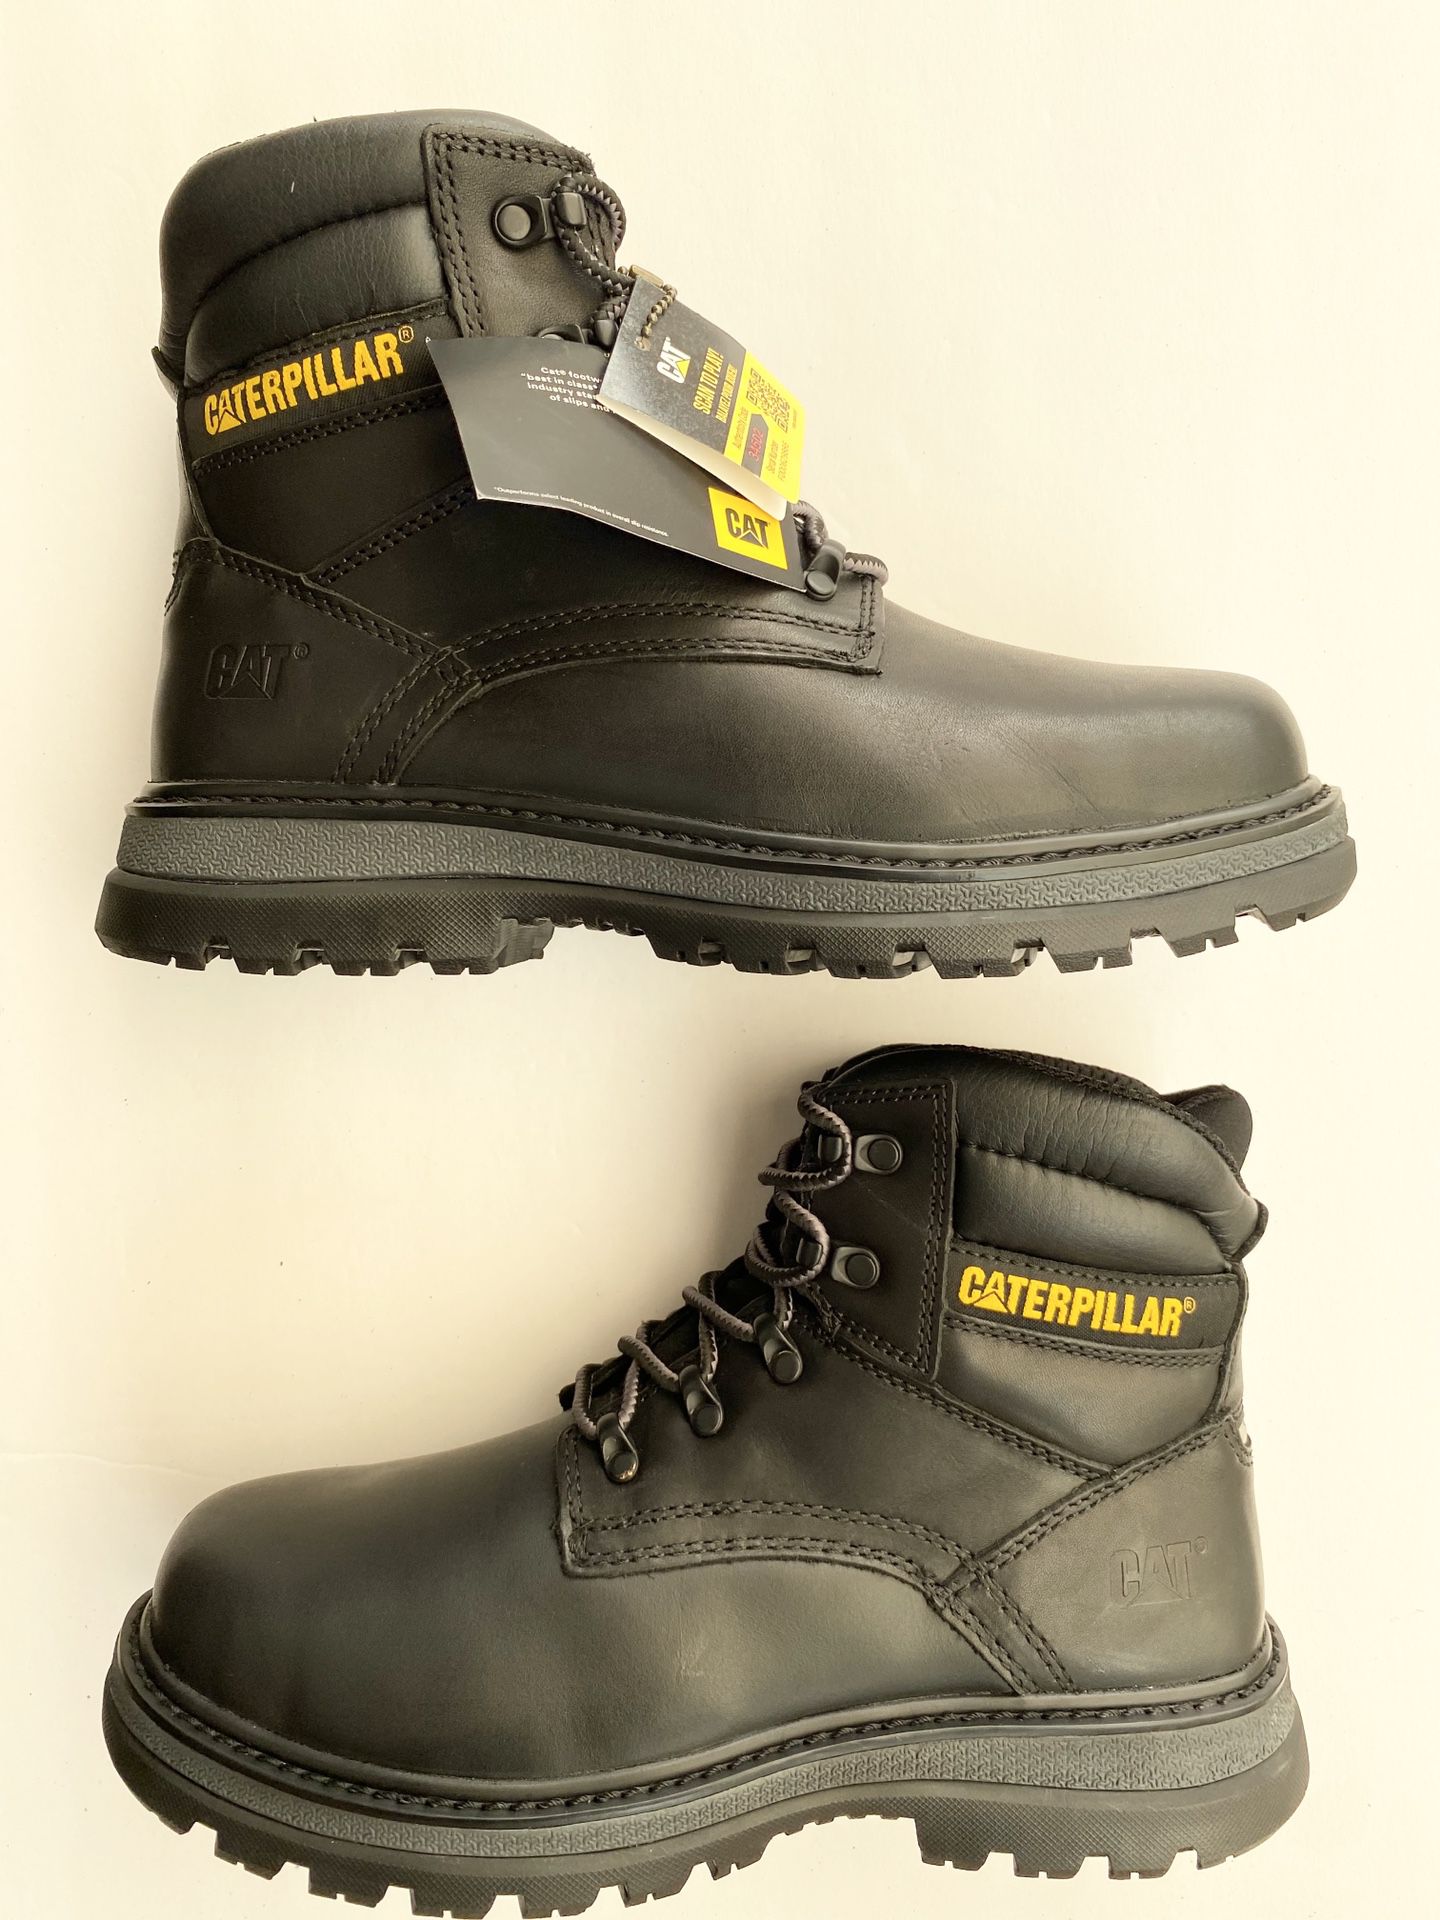 Men’s Caterpillar Work boots